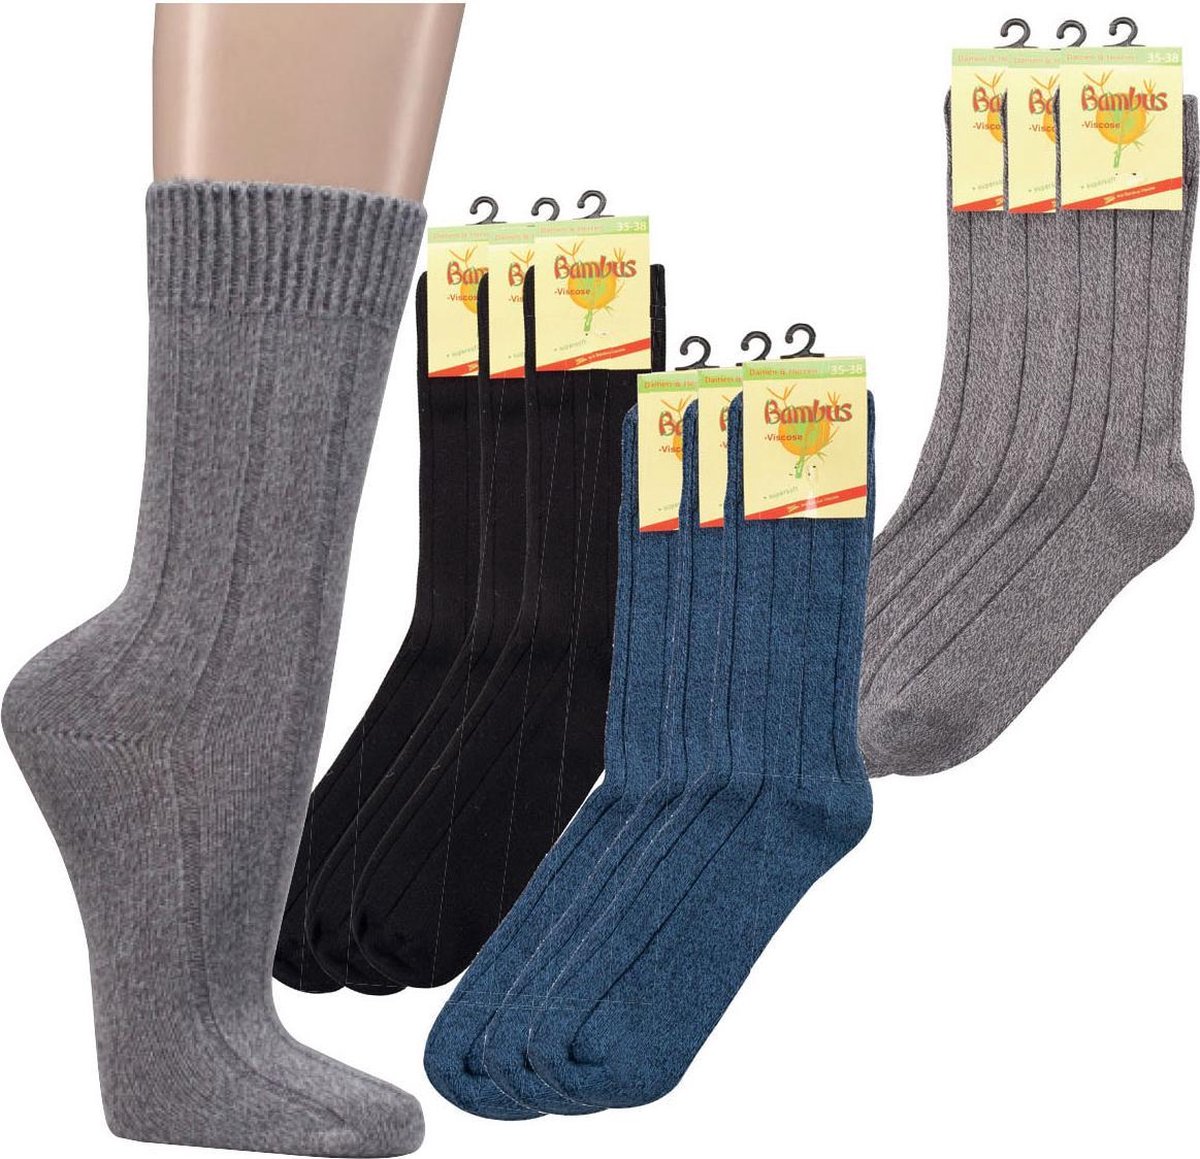 Bamboe sokken - extra warme uitvoering / wintersokken - 2 paar - zwart - normale schachtlengte - maat 35/38